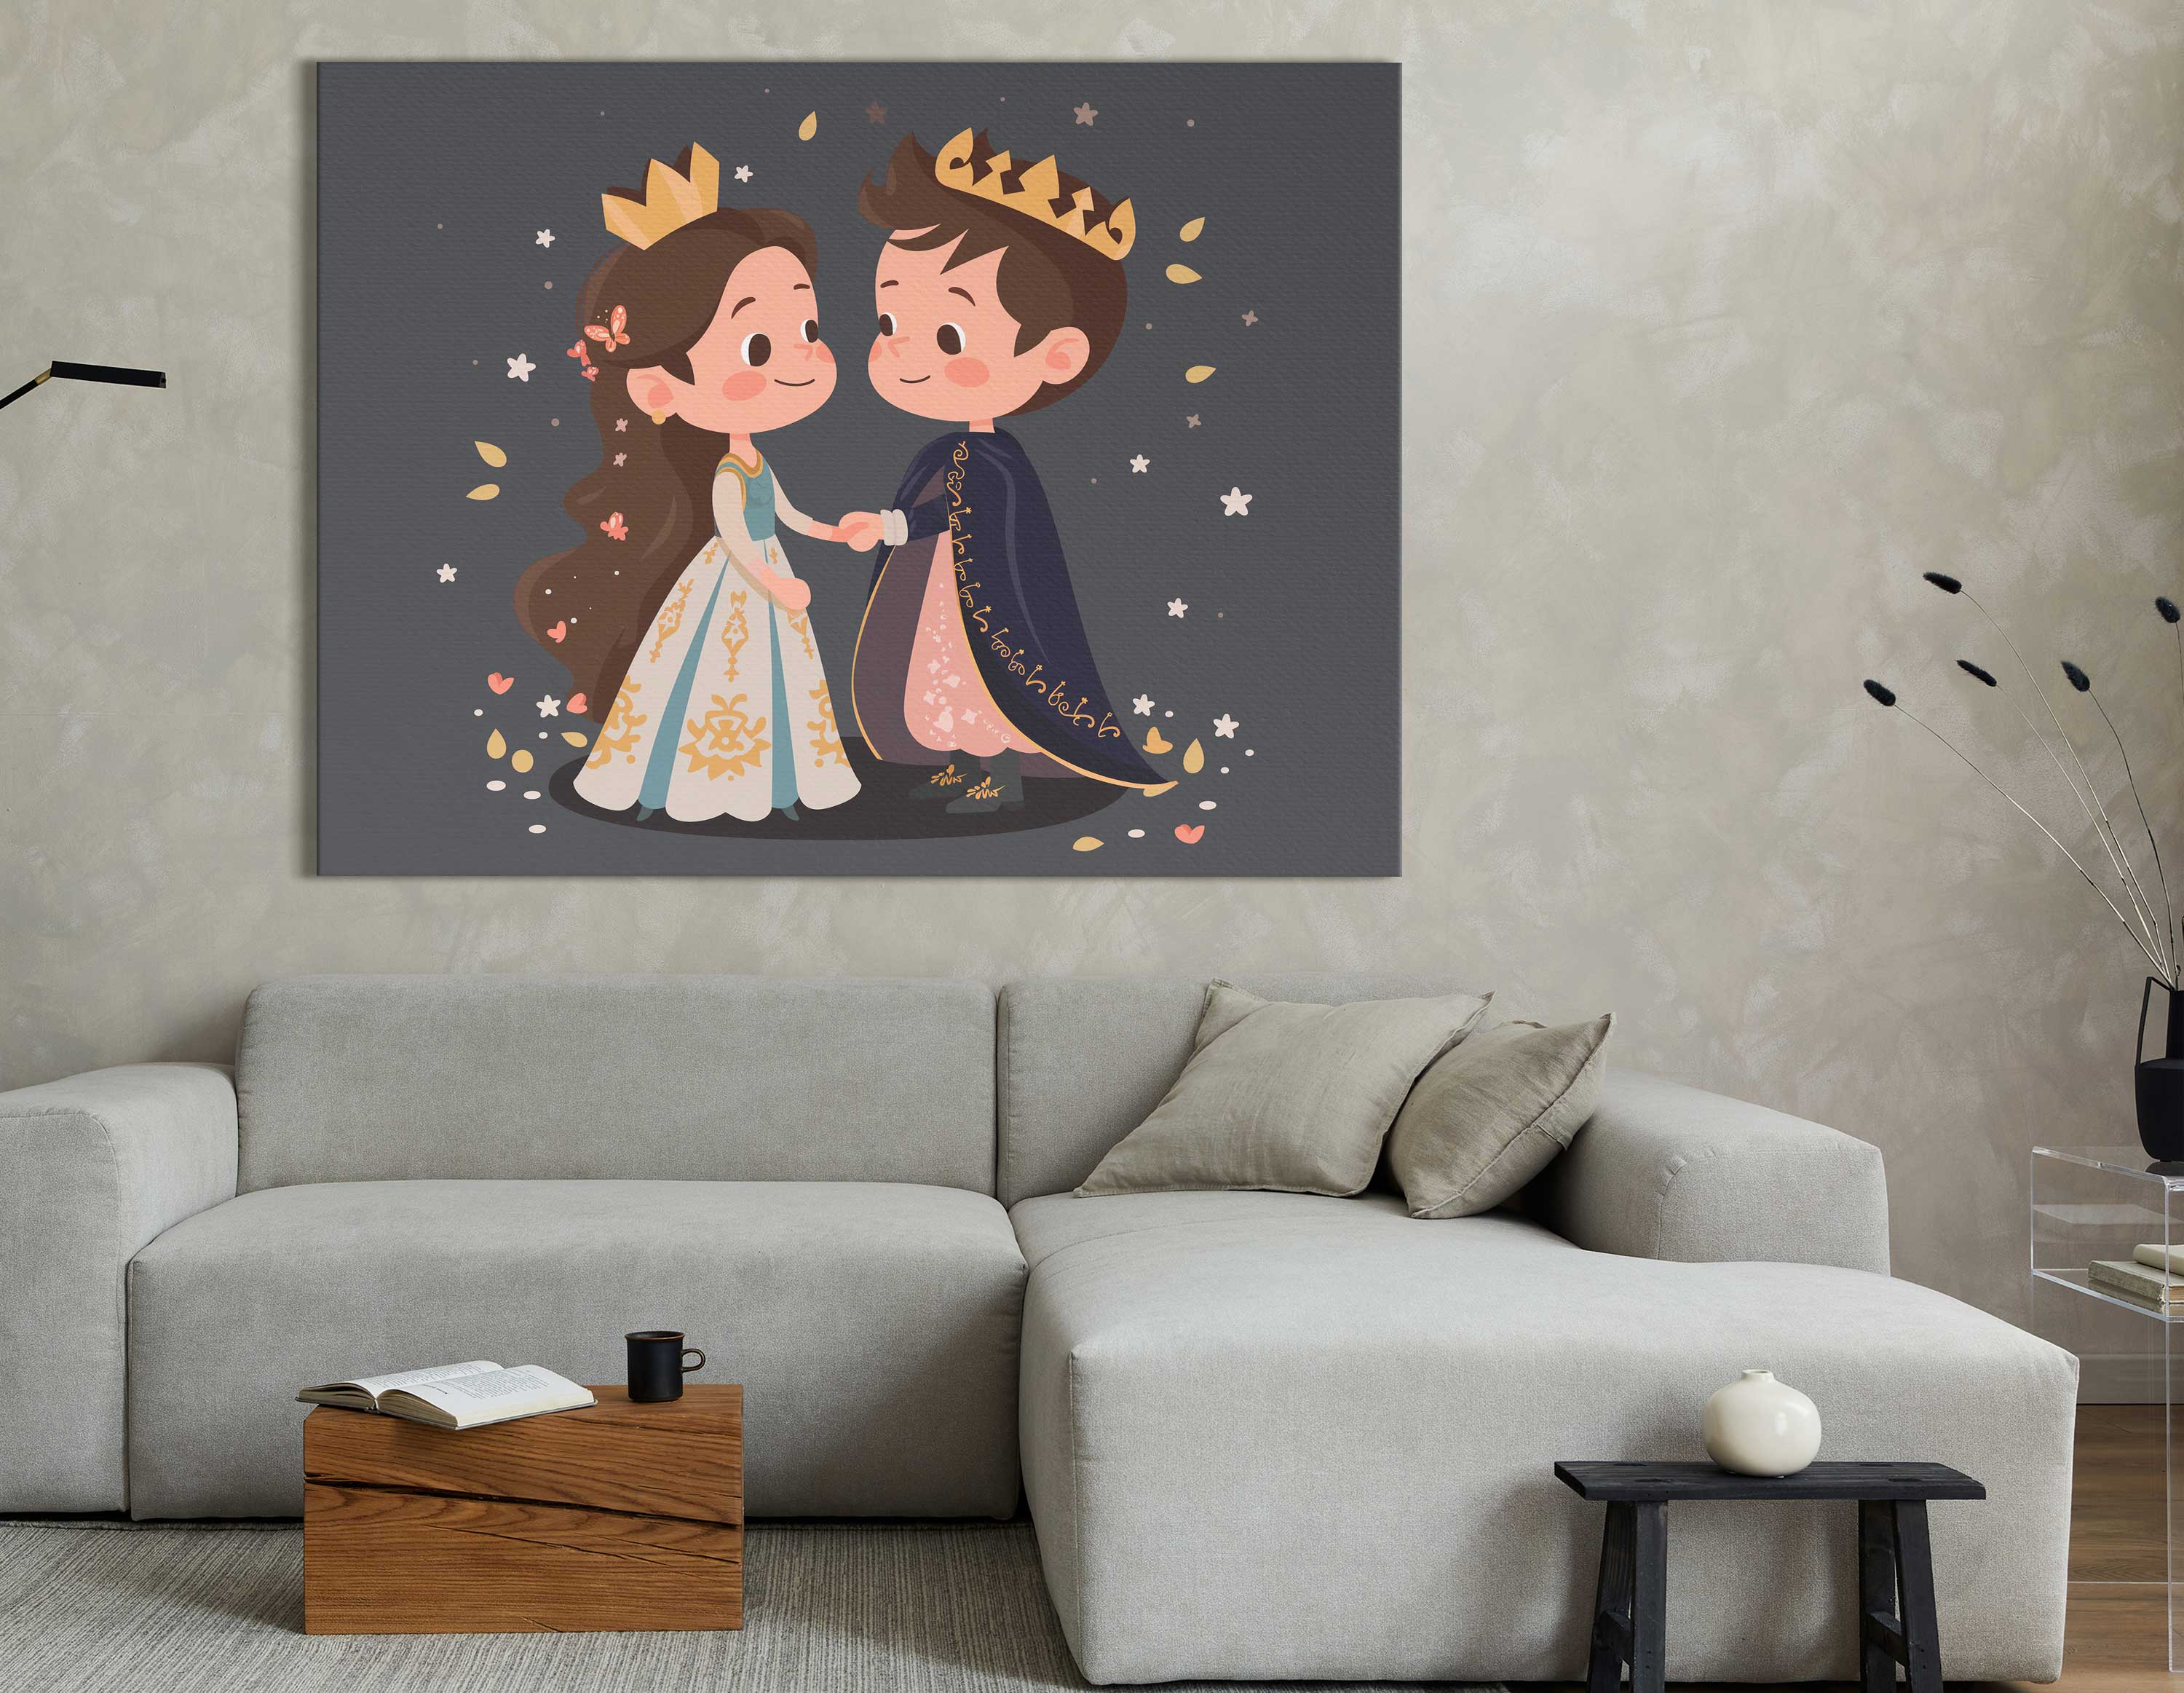 Prince and Princess Wall Art